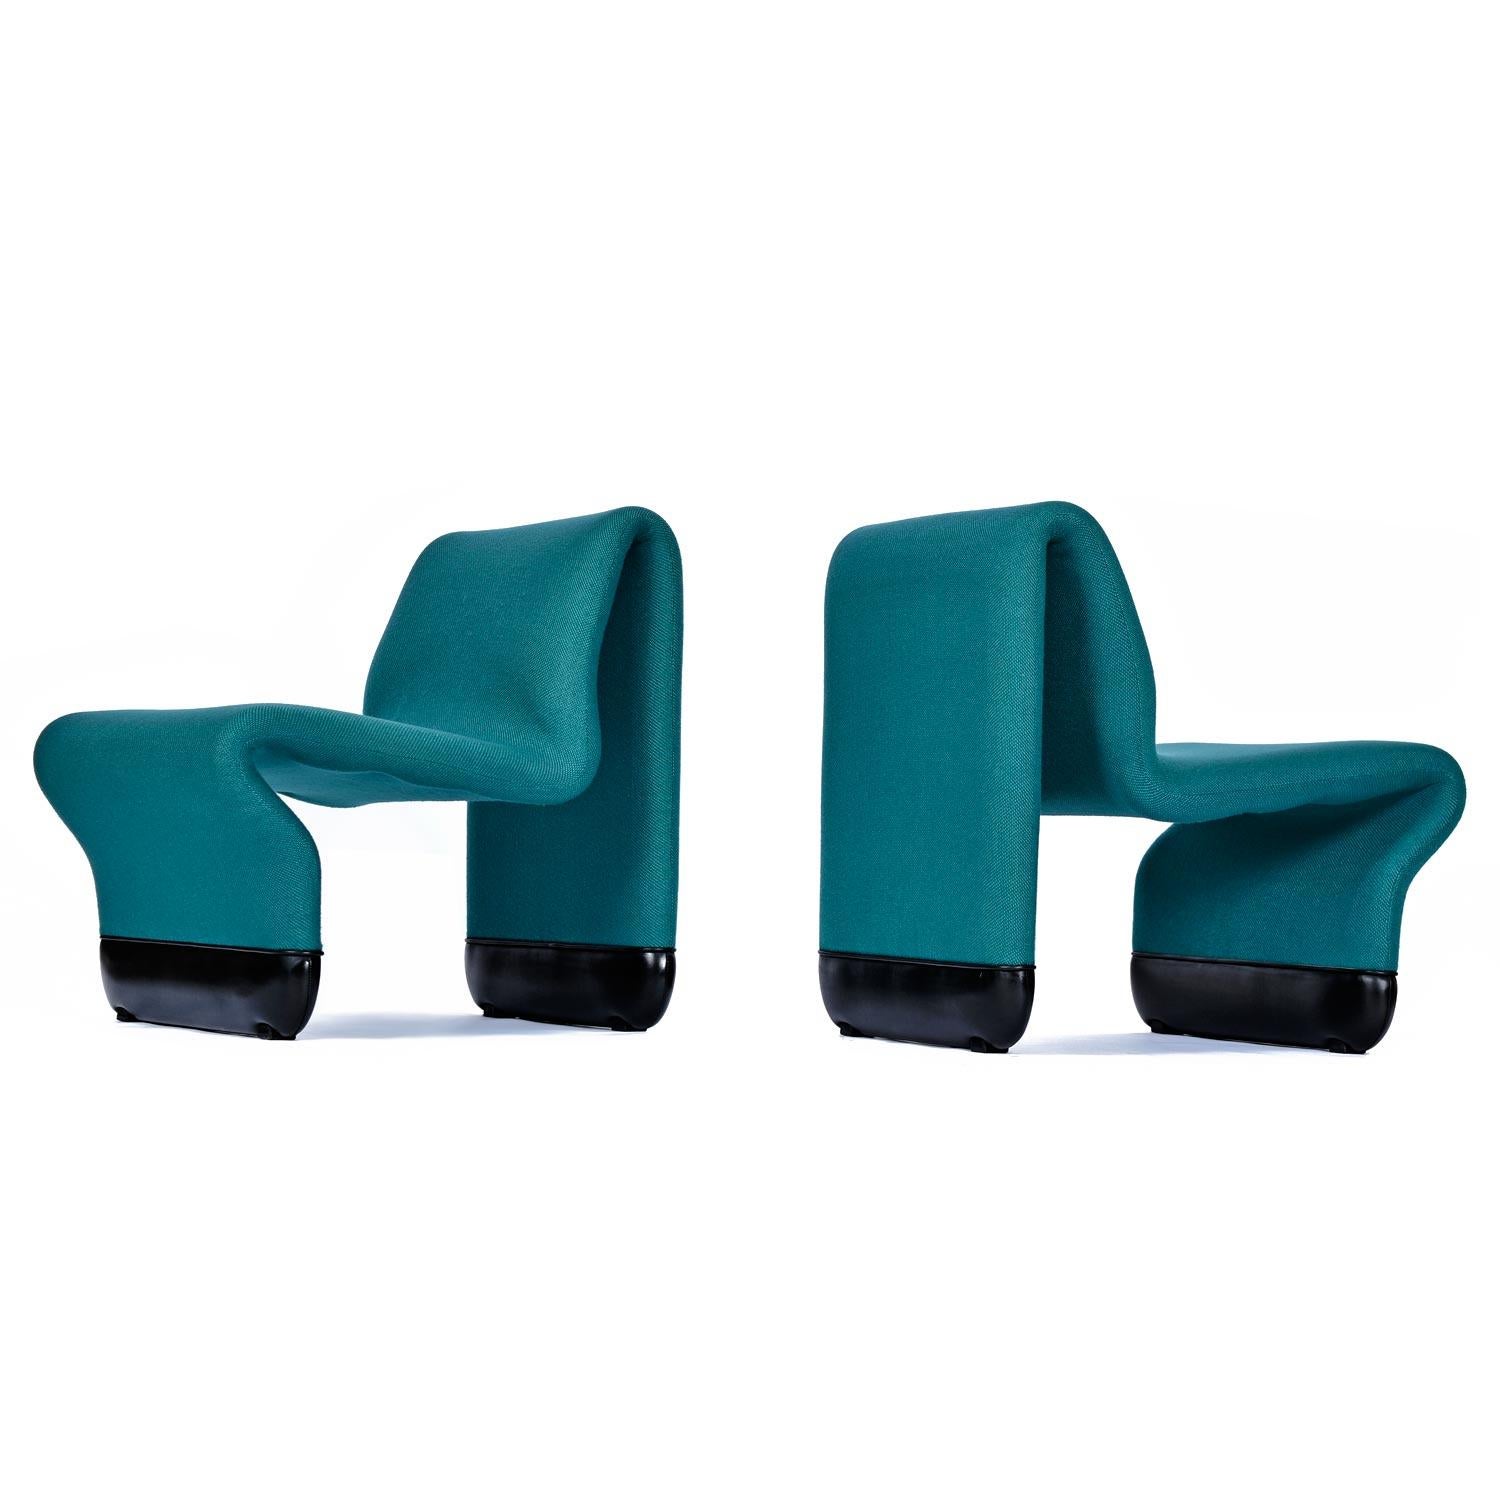 Canadian Star Trek TNG Paul Boulva for Artopex Ten Forward Modular Sofa Lounge Chair Set For Sale